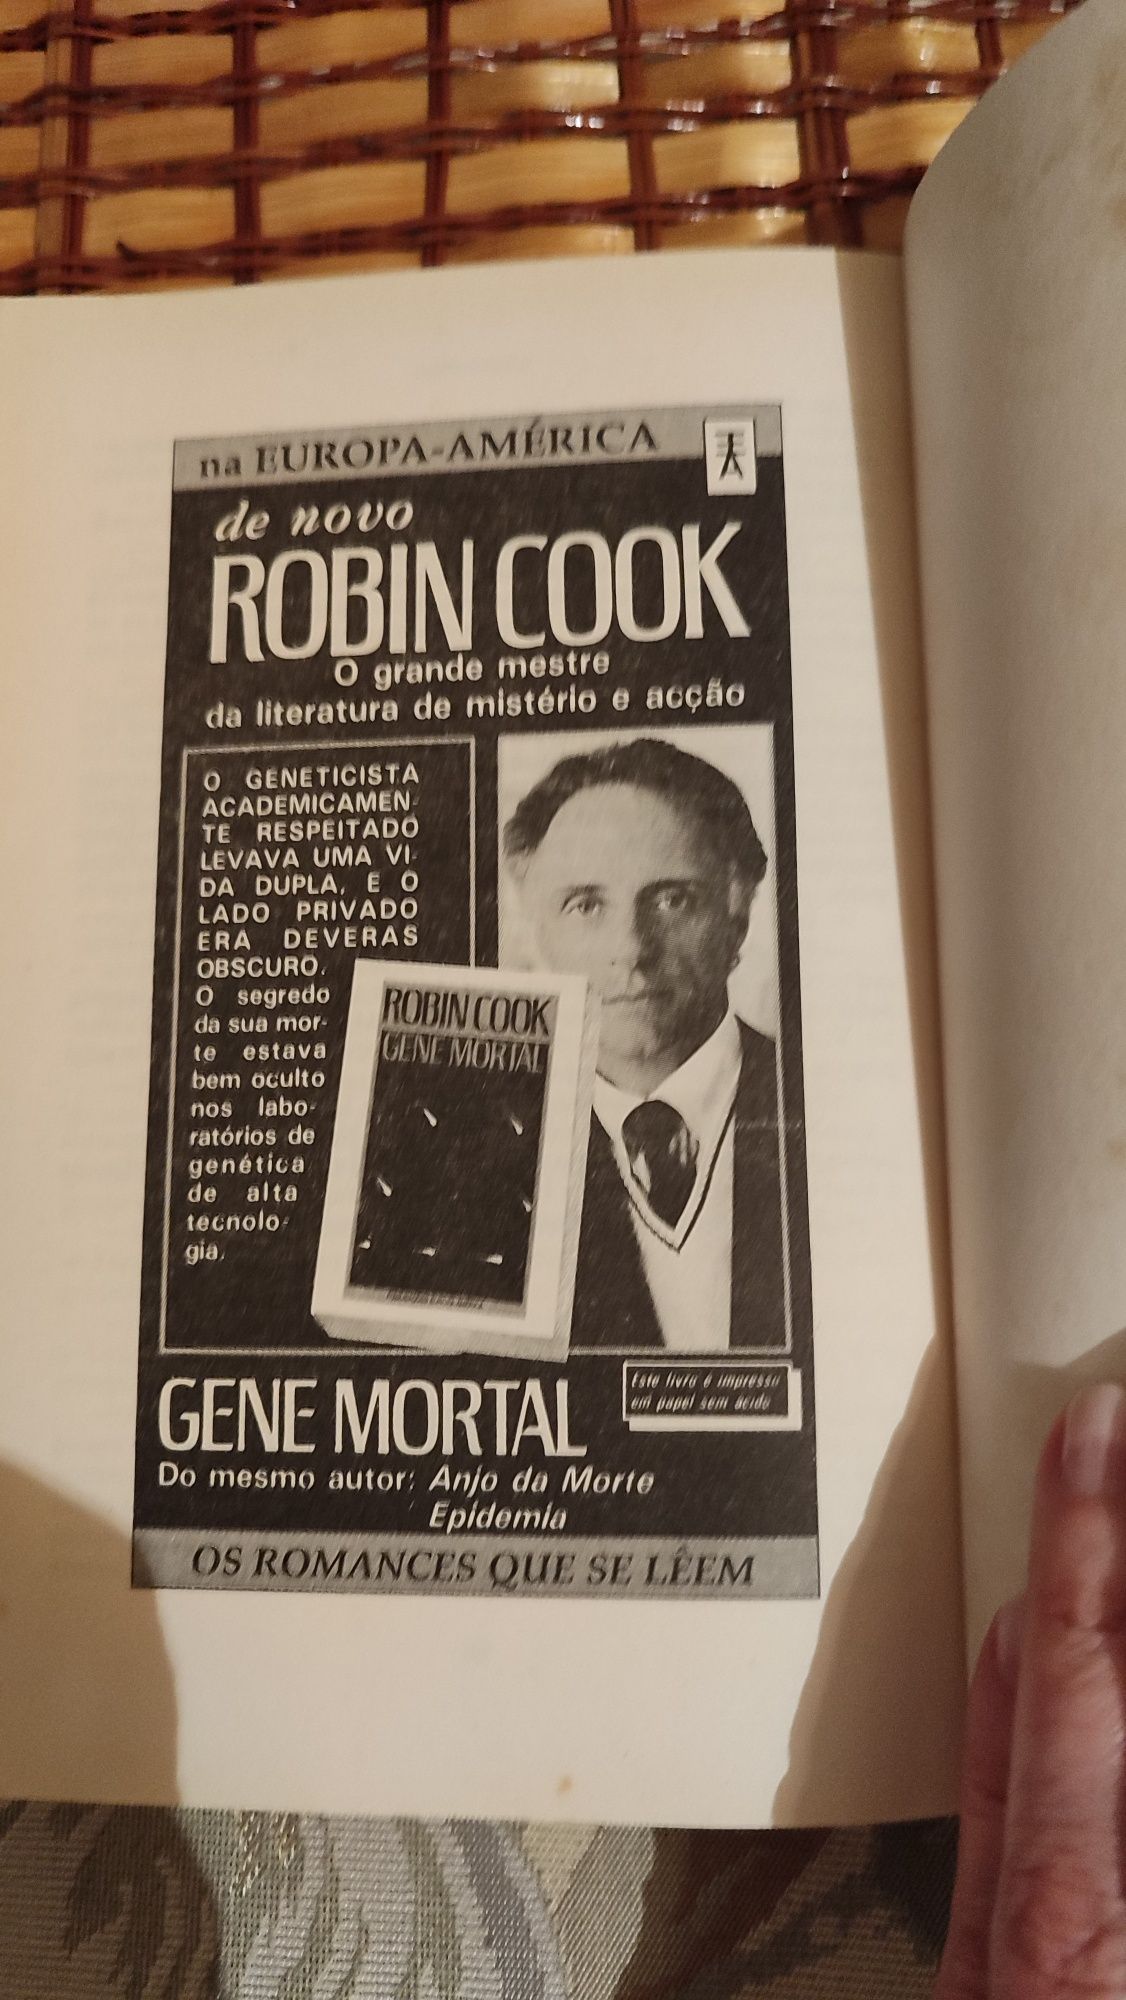 Livro "Cocaína" de Robin Cook